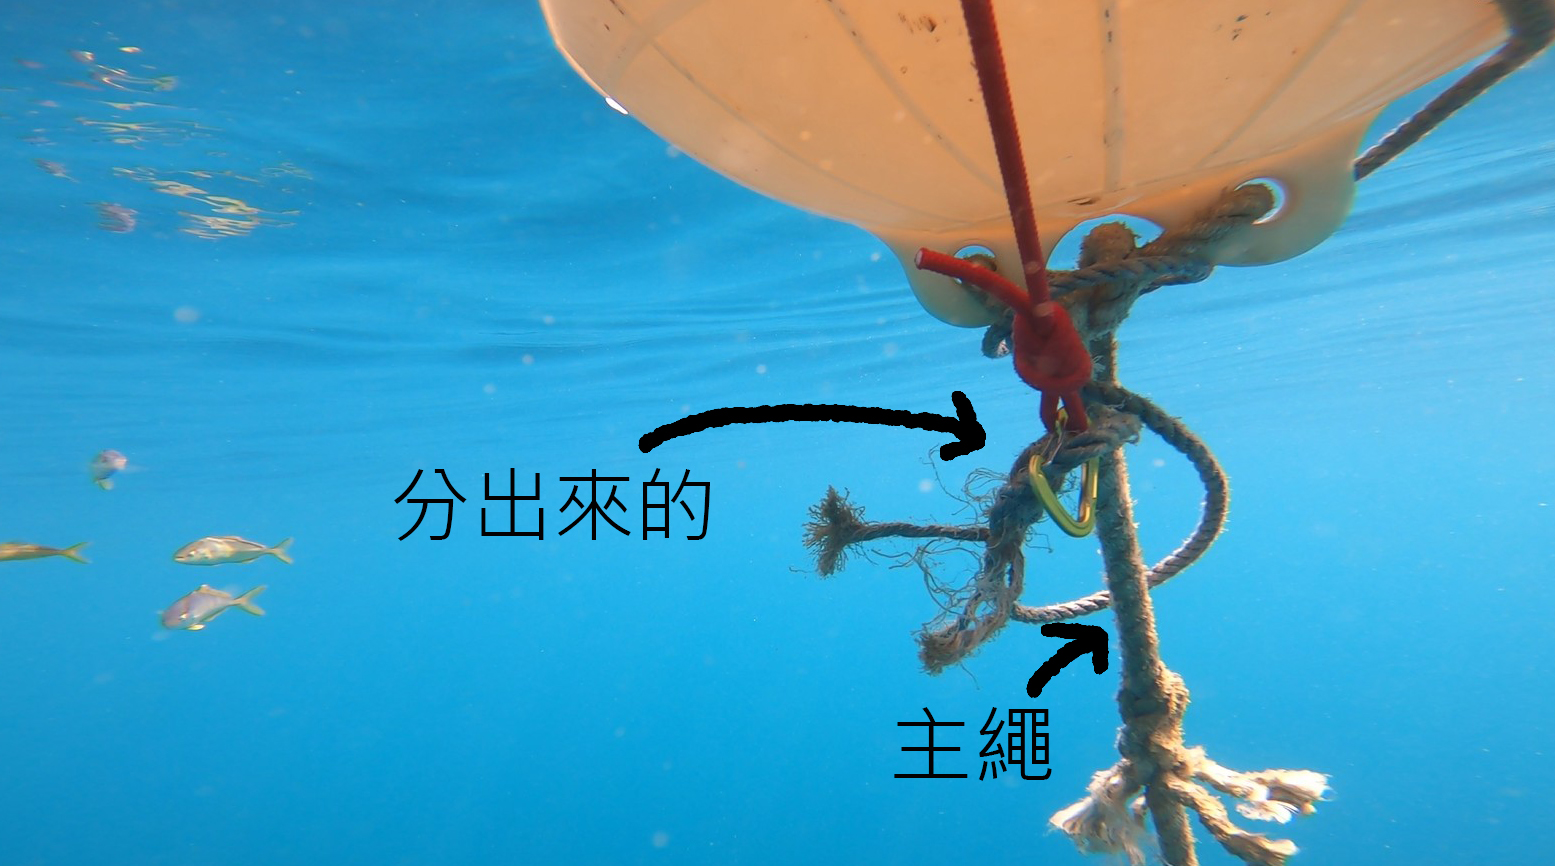 自由潛水 固定式浮球